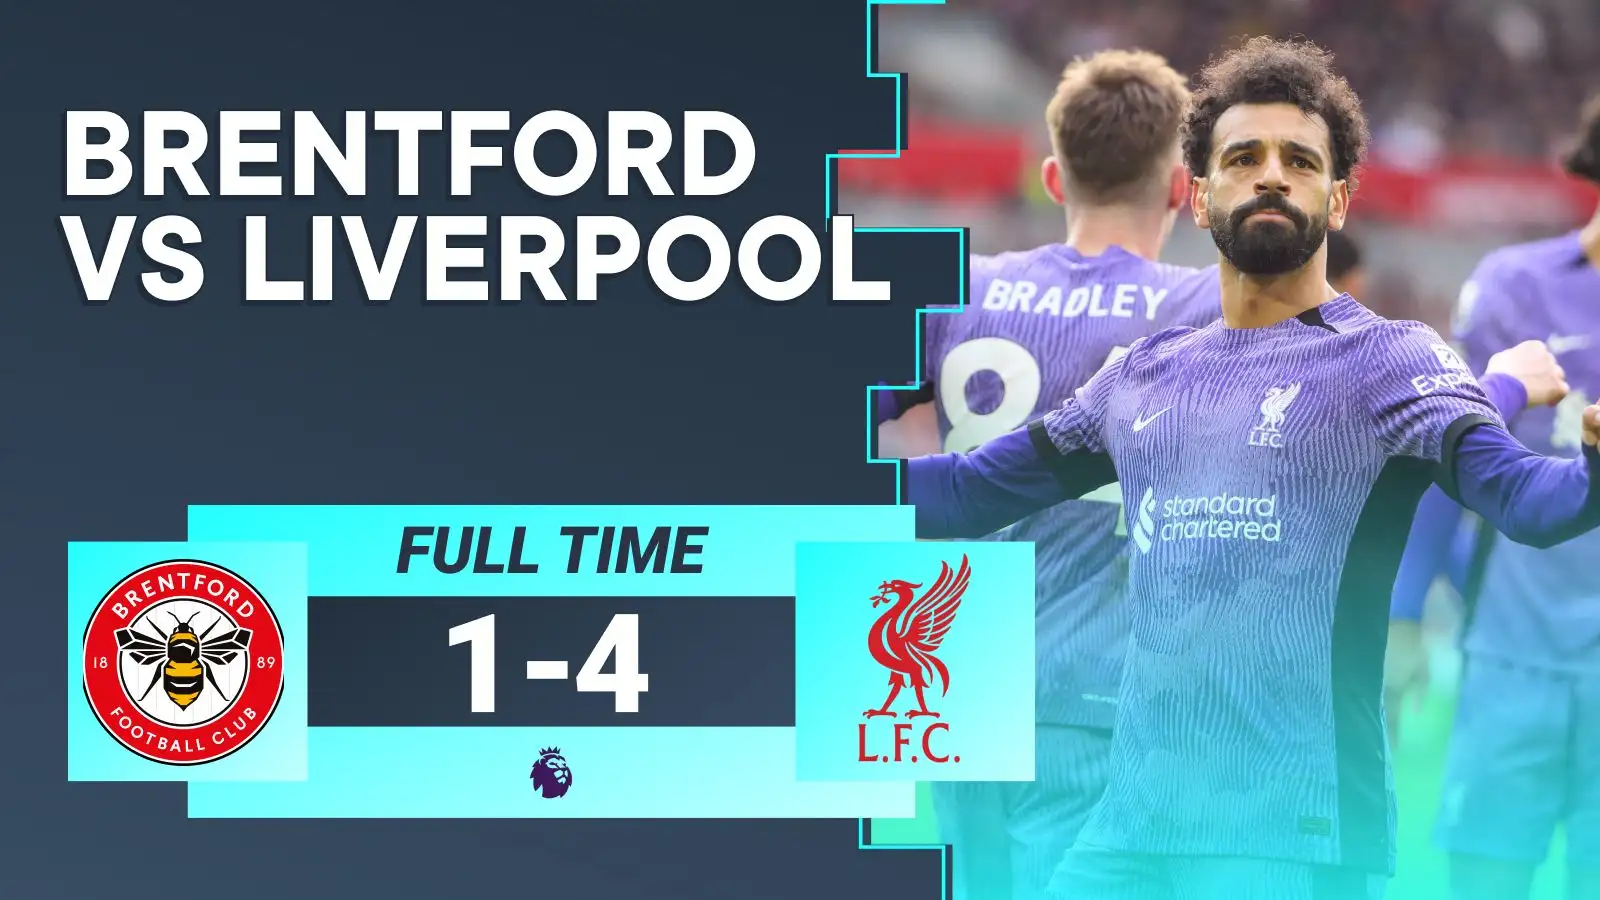 Liverpool overcome Brentford